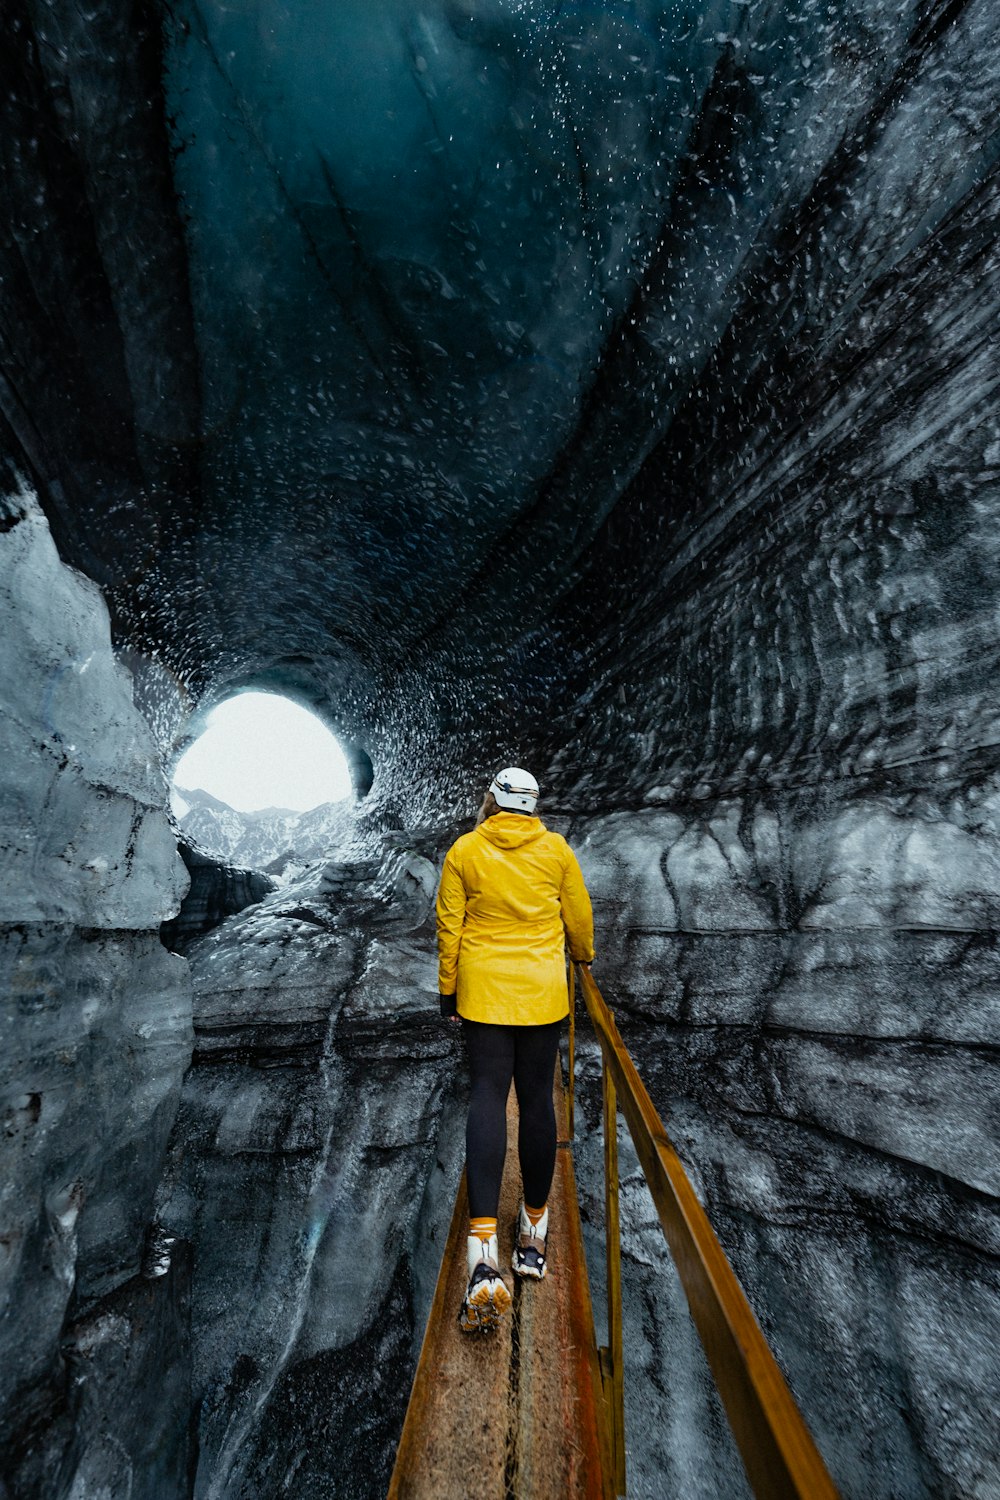 Une personne vêtue d’une veste jaune traverse un tunnel